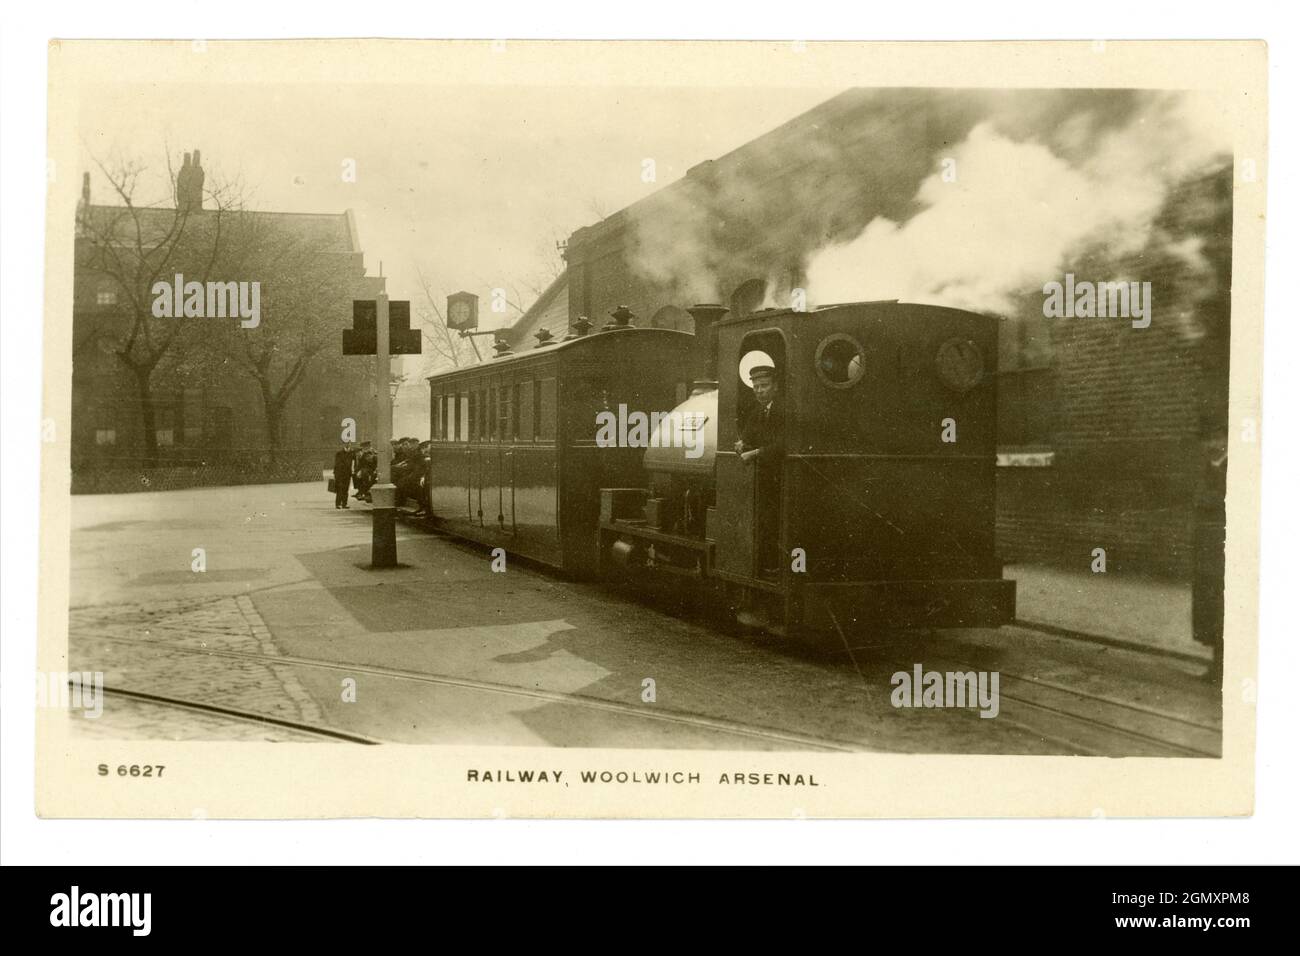 WW1 era cartolina del motore ferroviario (c'erano 3) con conducente in attesa ad una piattaforma - usato per il trasporto di munizioni, al servizio di Woolwich Arsenal. Chiamata Royal Arsenal Railway di Londra. Arsenal era una fabbrica di riempimento di conchiglie. 1914-1918 Foto Stock